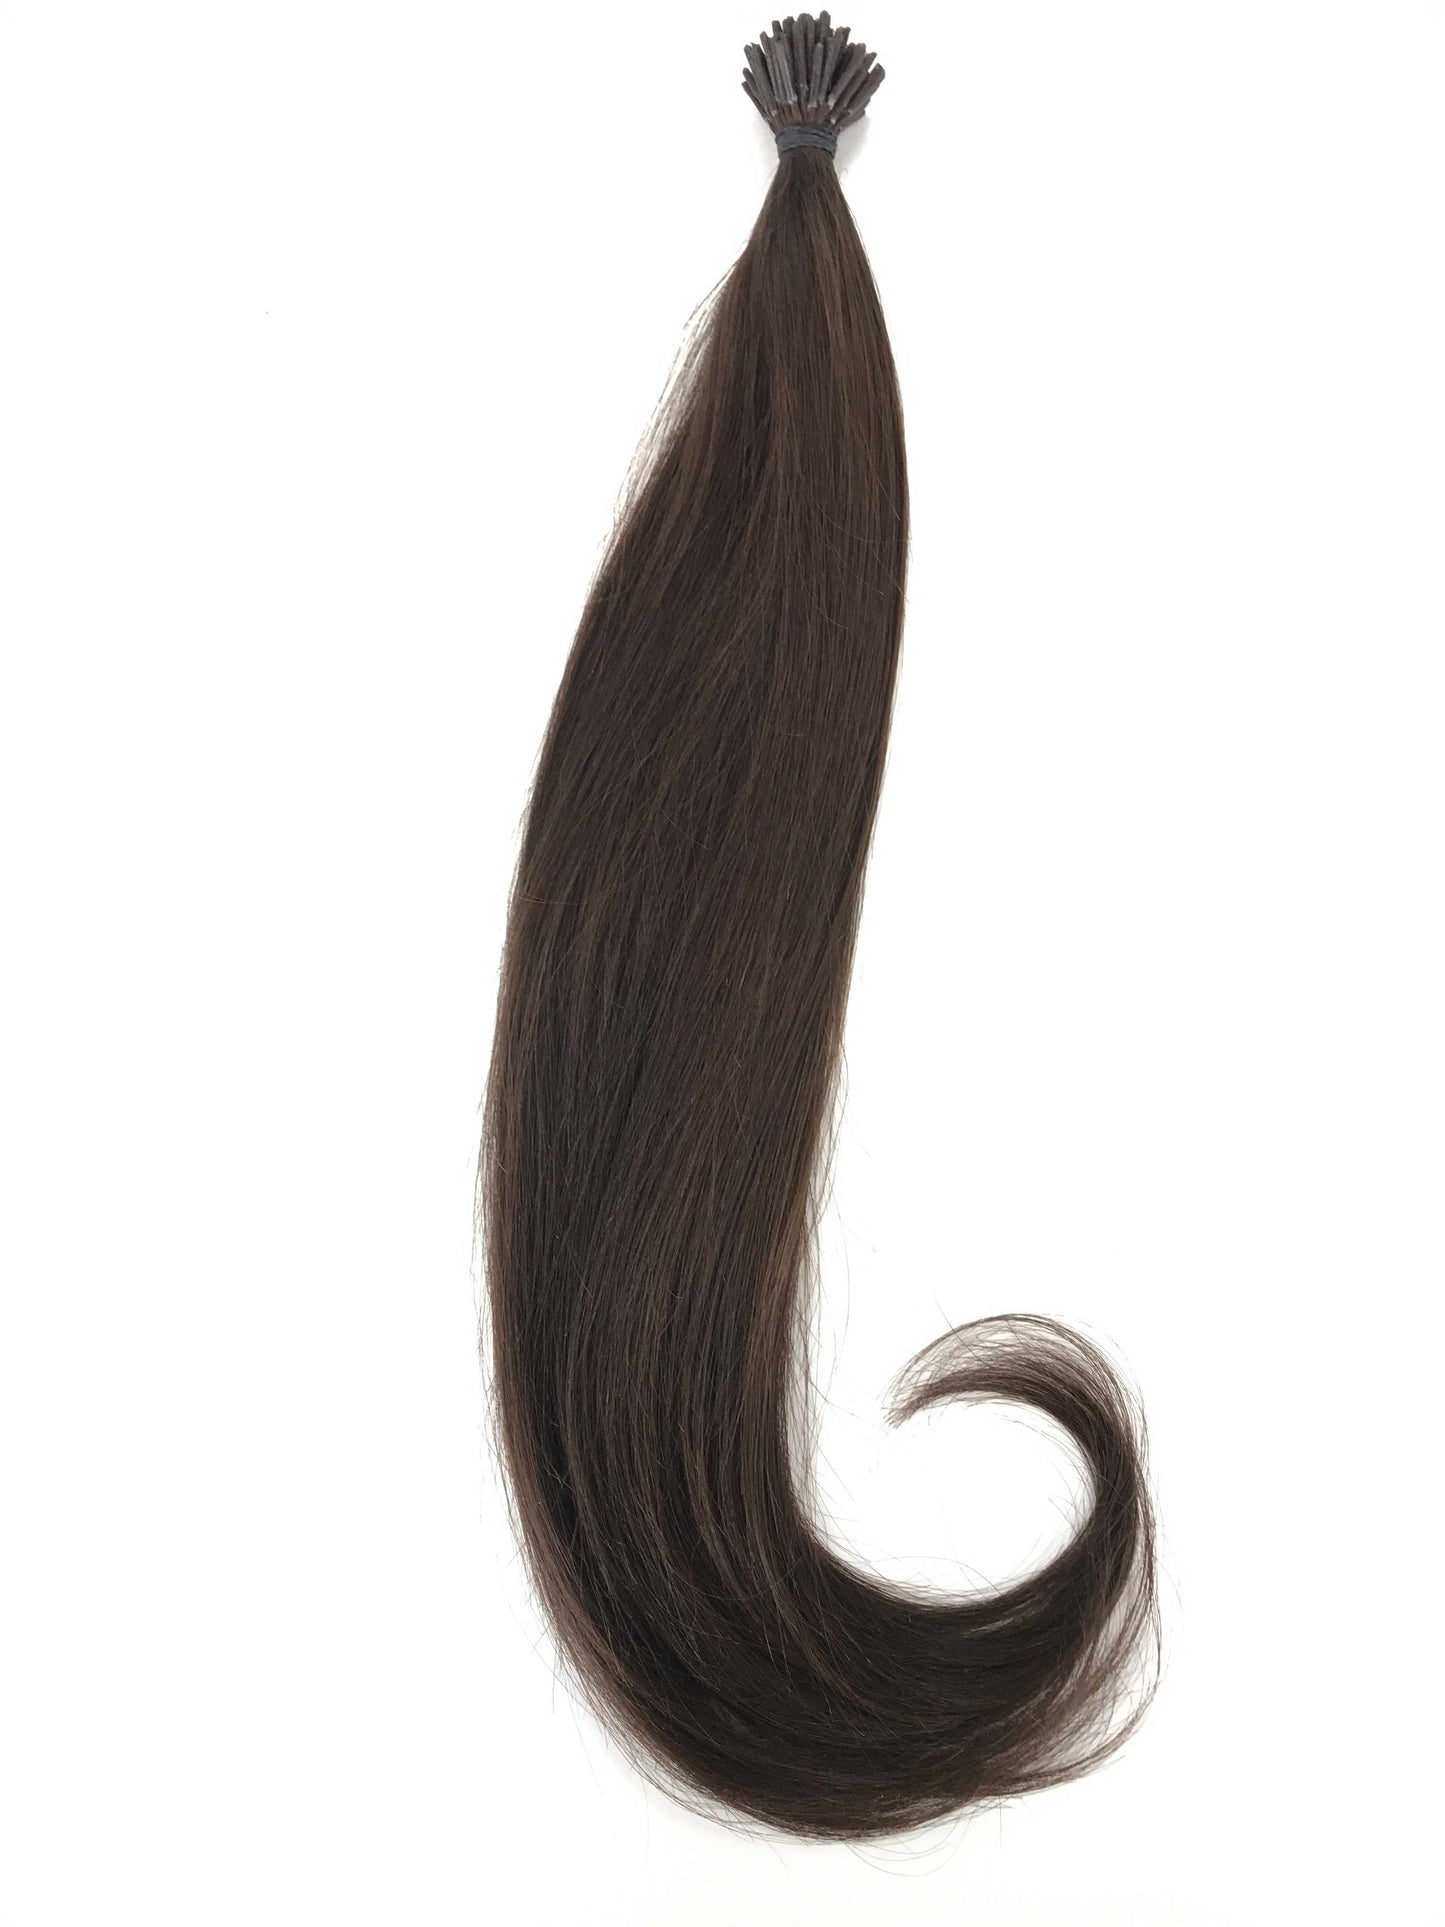 وصلات شعر بشري لعذراء روسية، حلقات صغيرة بحجم 0.7 جرام من i-Tip، شعر وجمال عذراء، أفضل وصلات شعر، شعر بشري لعذراء حقيقي.